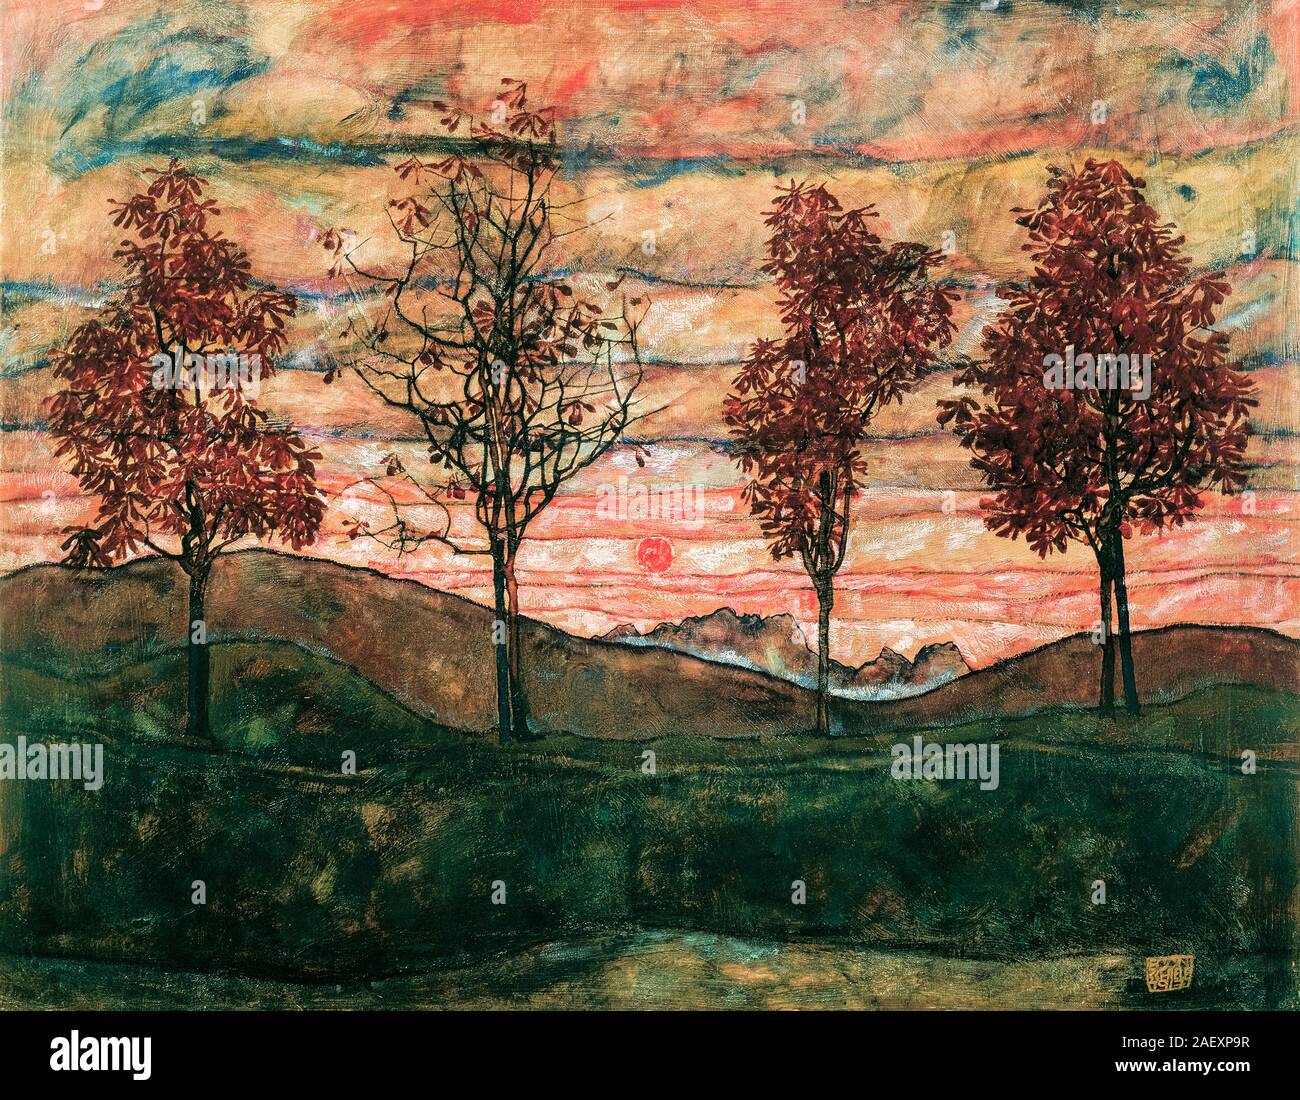 Egon Schiele, Four Trees, landscape painting, 1917 Stock Photo